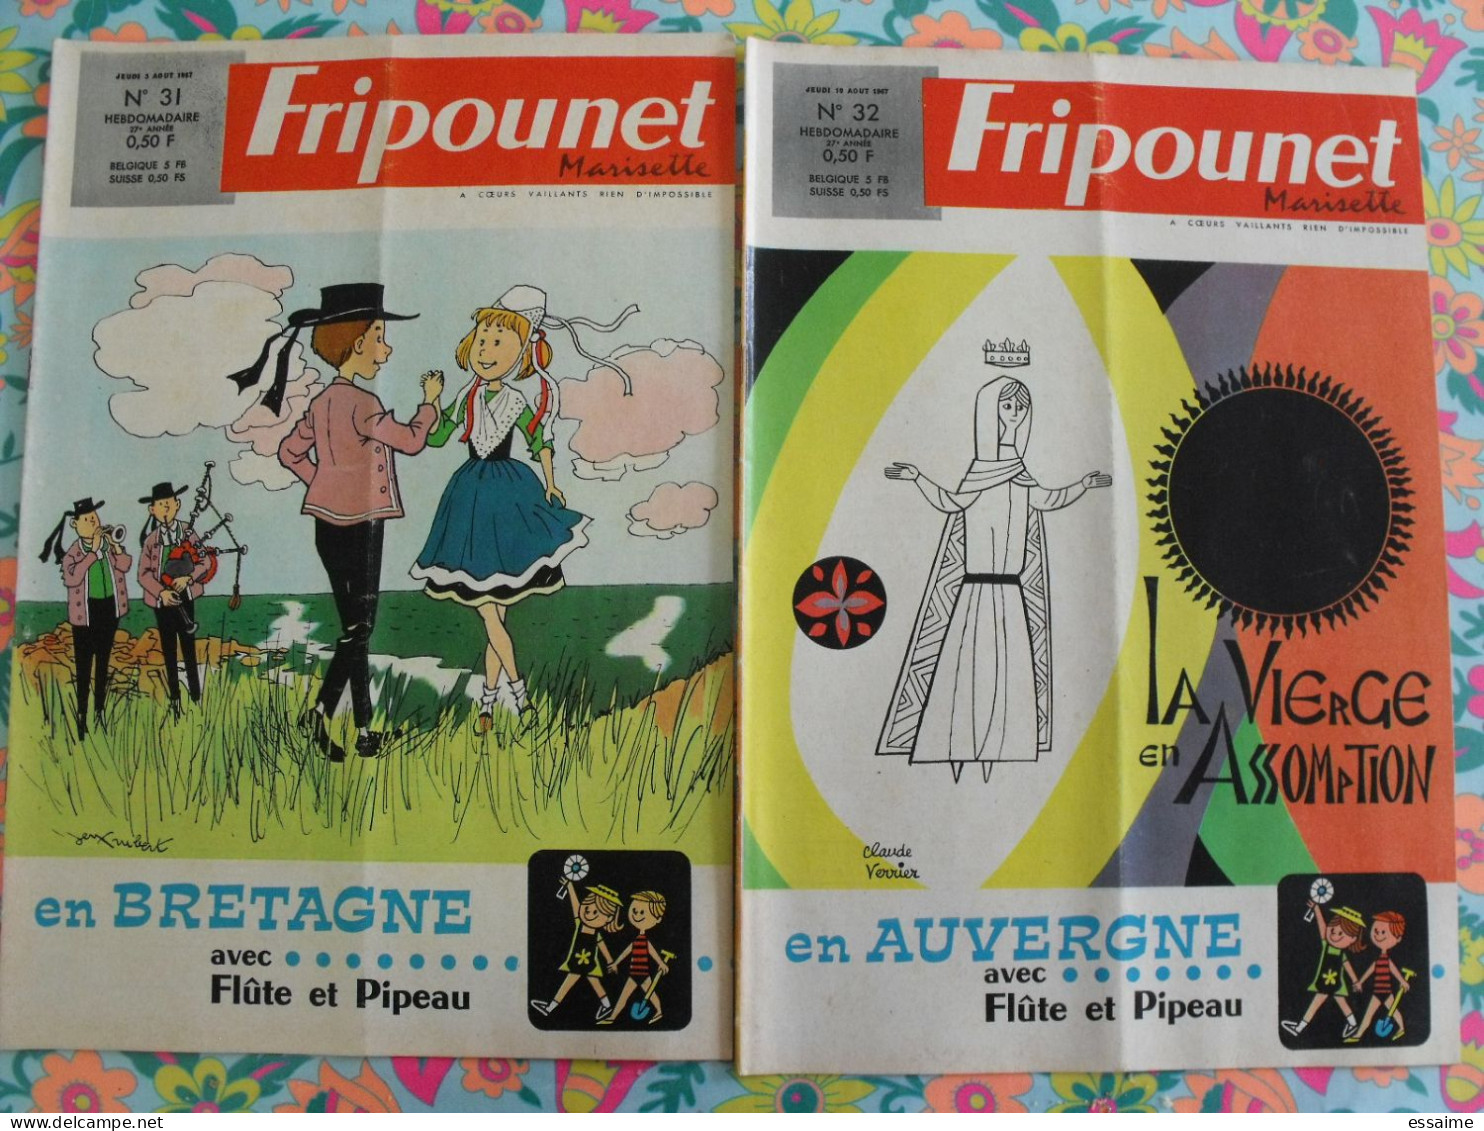 année 1967 complète de Fripounet Marisette. 52 n° (1 à 52). brochard bonnet dubois dufossé erik mic delinx rigot trubert